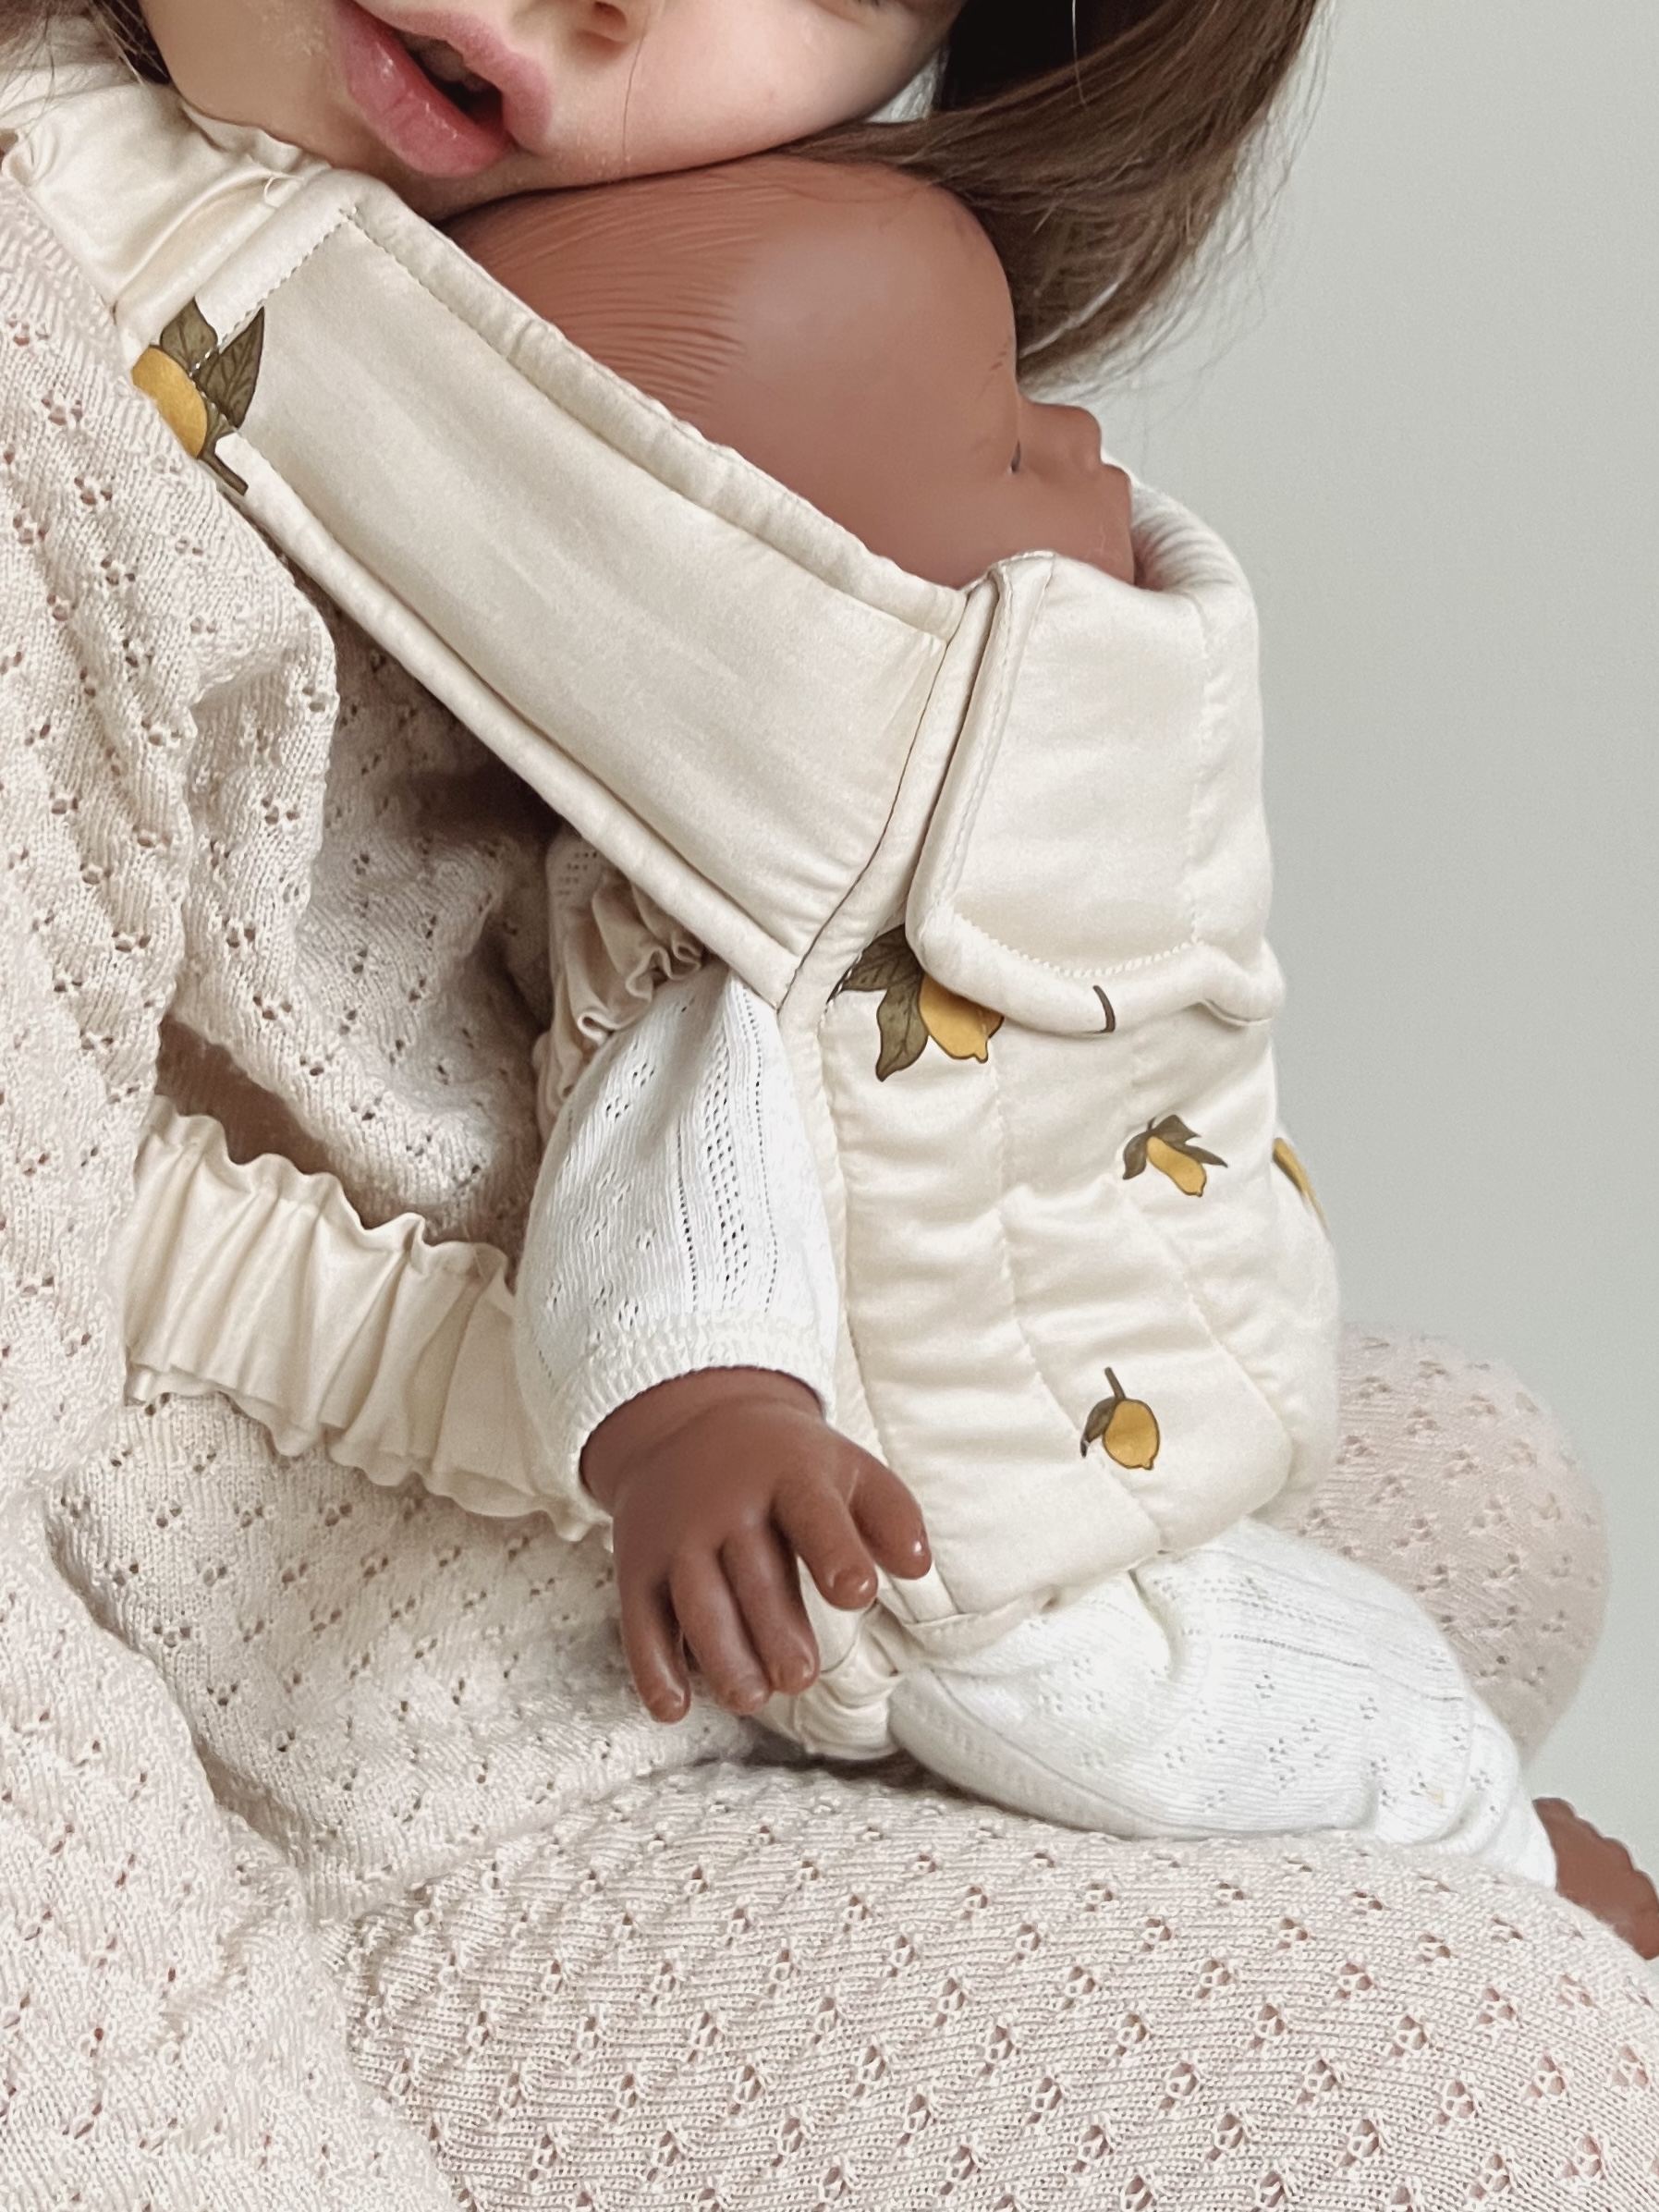 Cikonielf porte-jouets pour enfants Porte-bébé en coton pour bébé